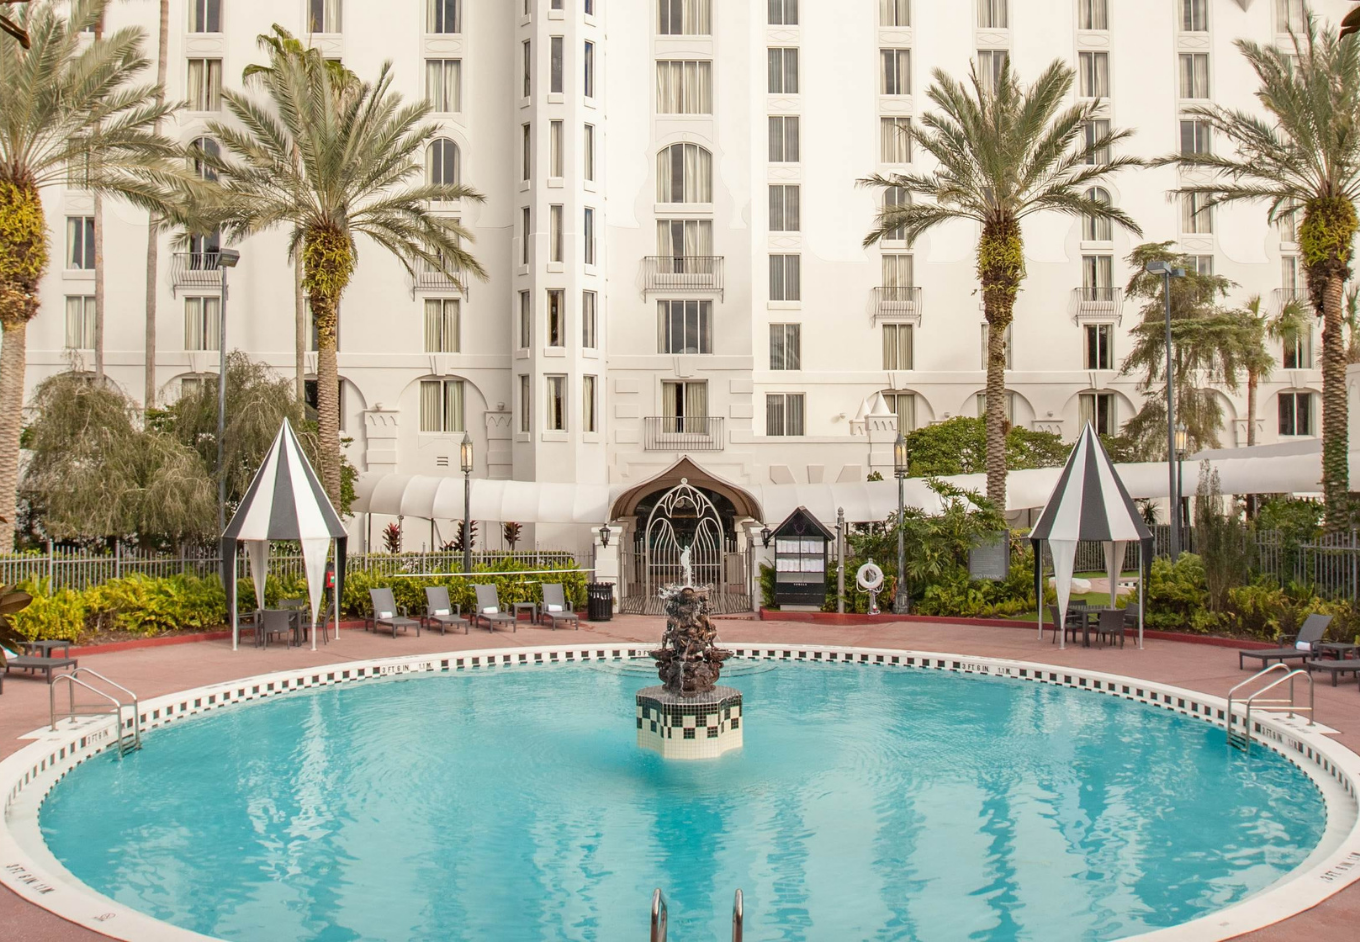 20 Top Hotels Near International Drive Orlando   CuddlyNest